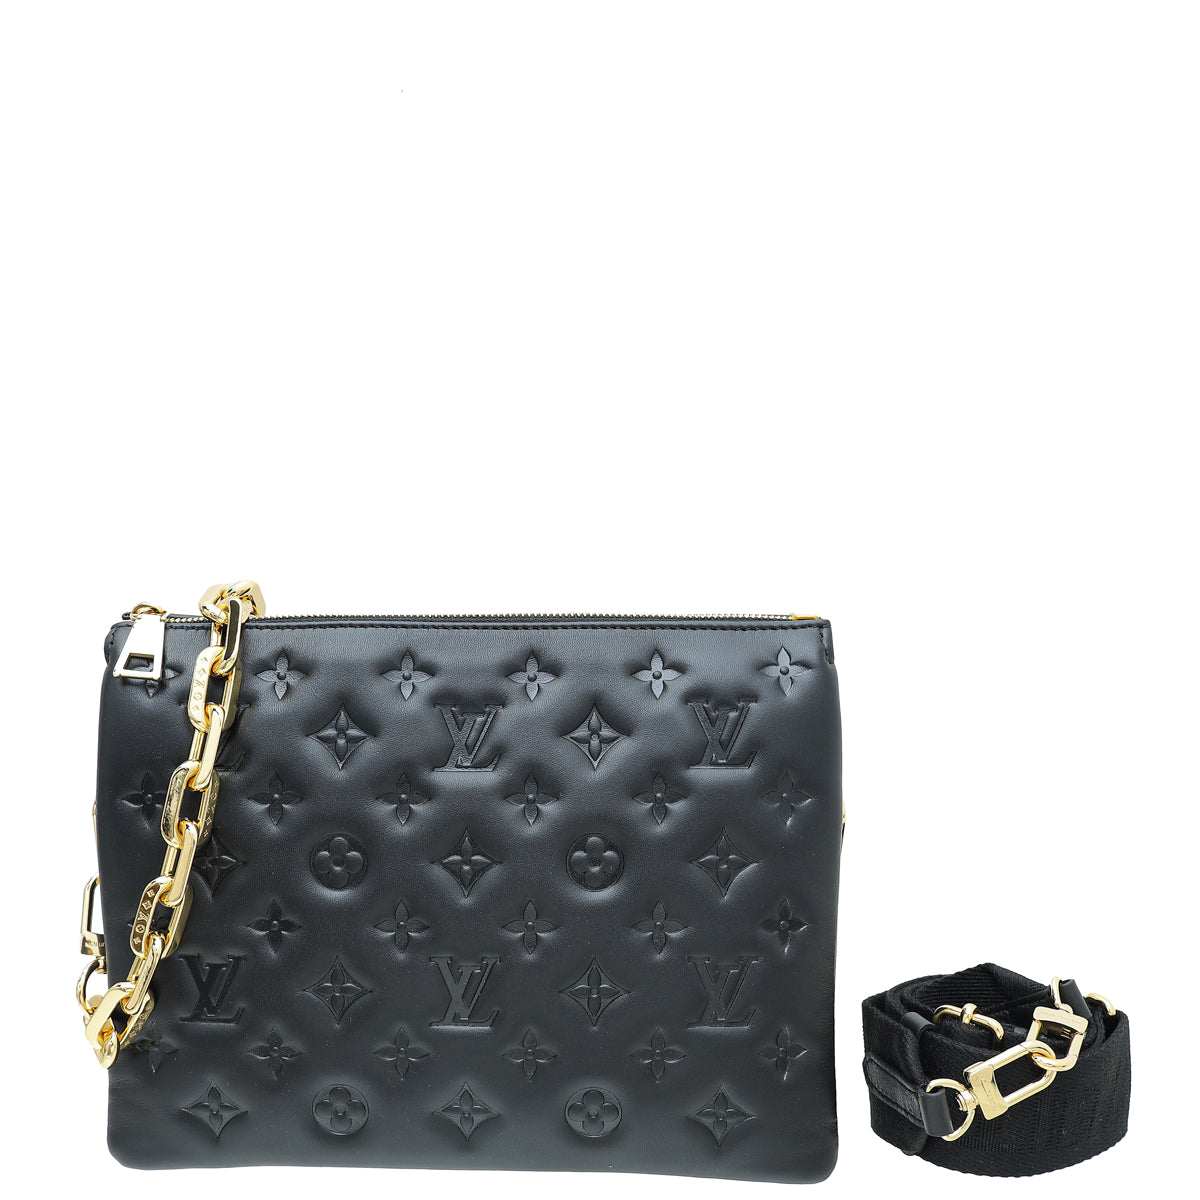 Brand New Louis Vuitton Coussin Shoulder Bag PM Black Noir